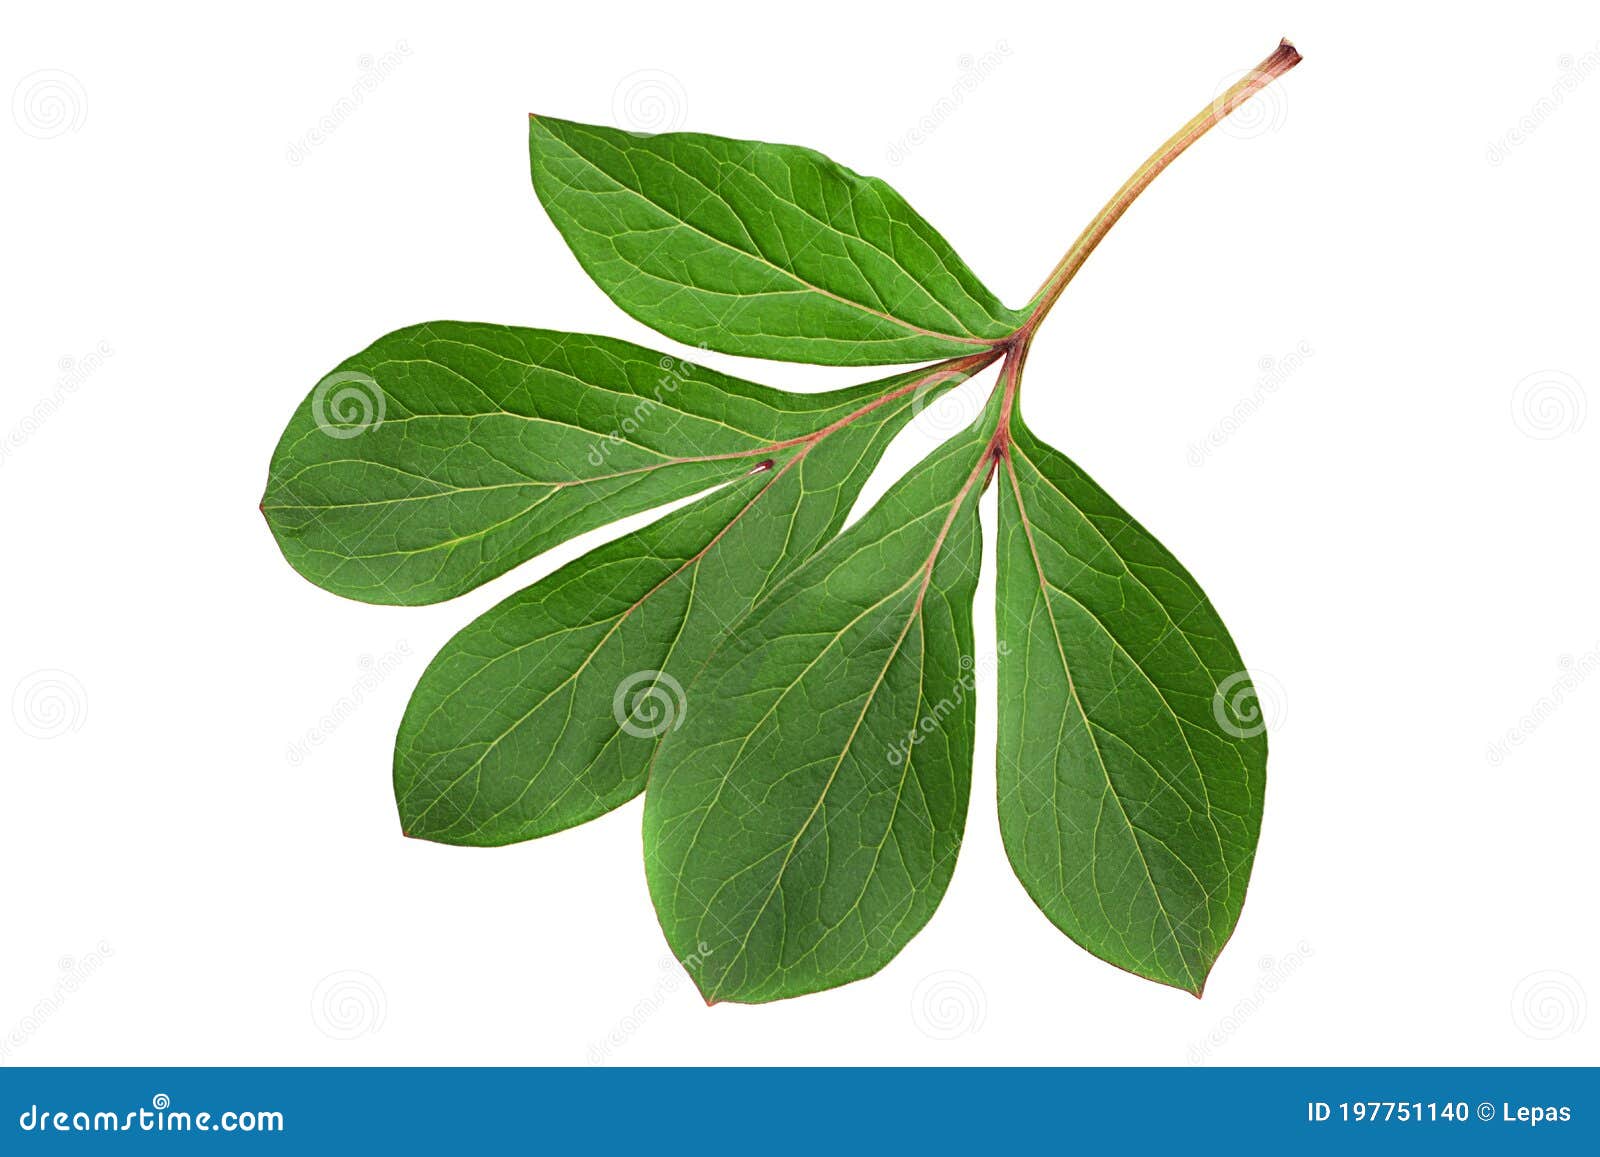 peon flower leaf